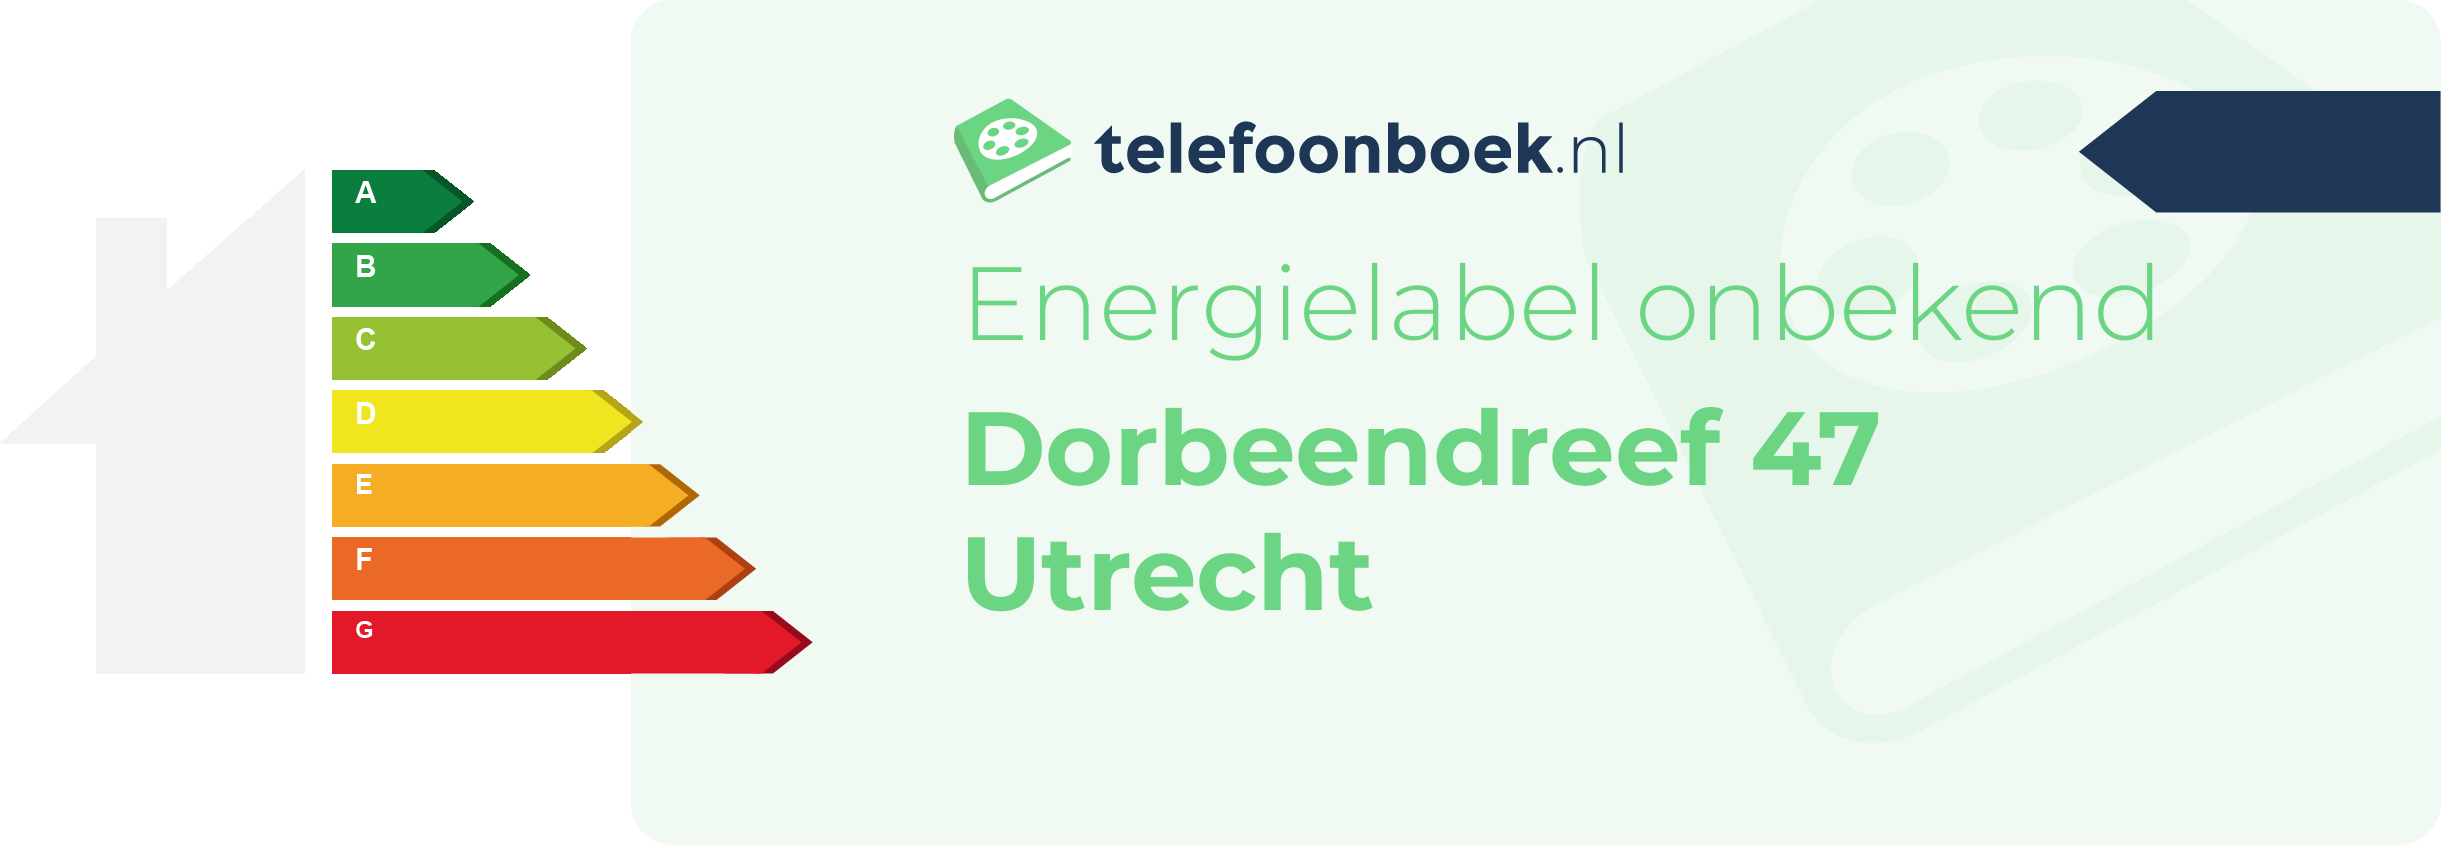 Energielabel Dorbeendreef 47 Utrecht